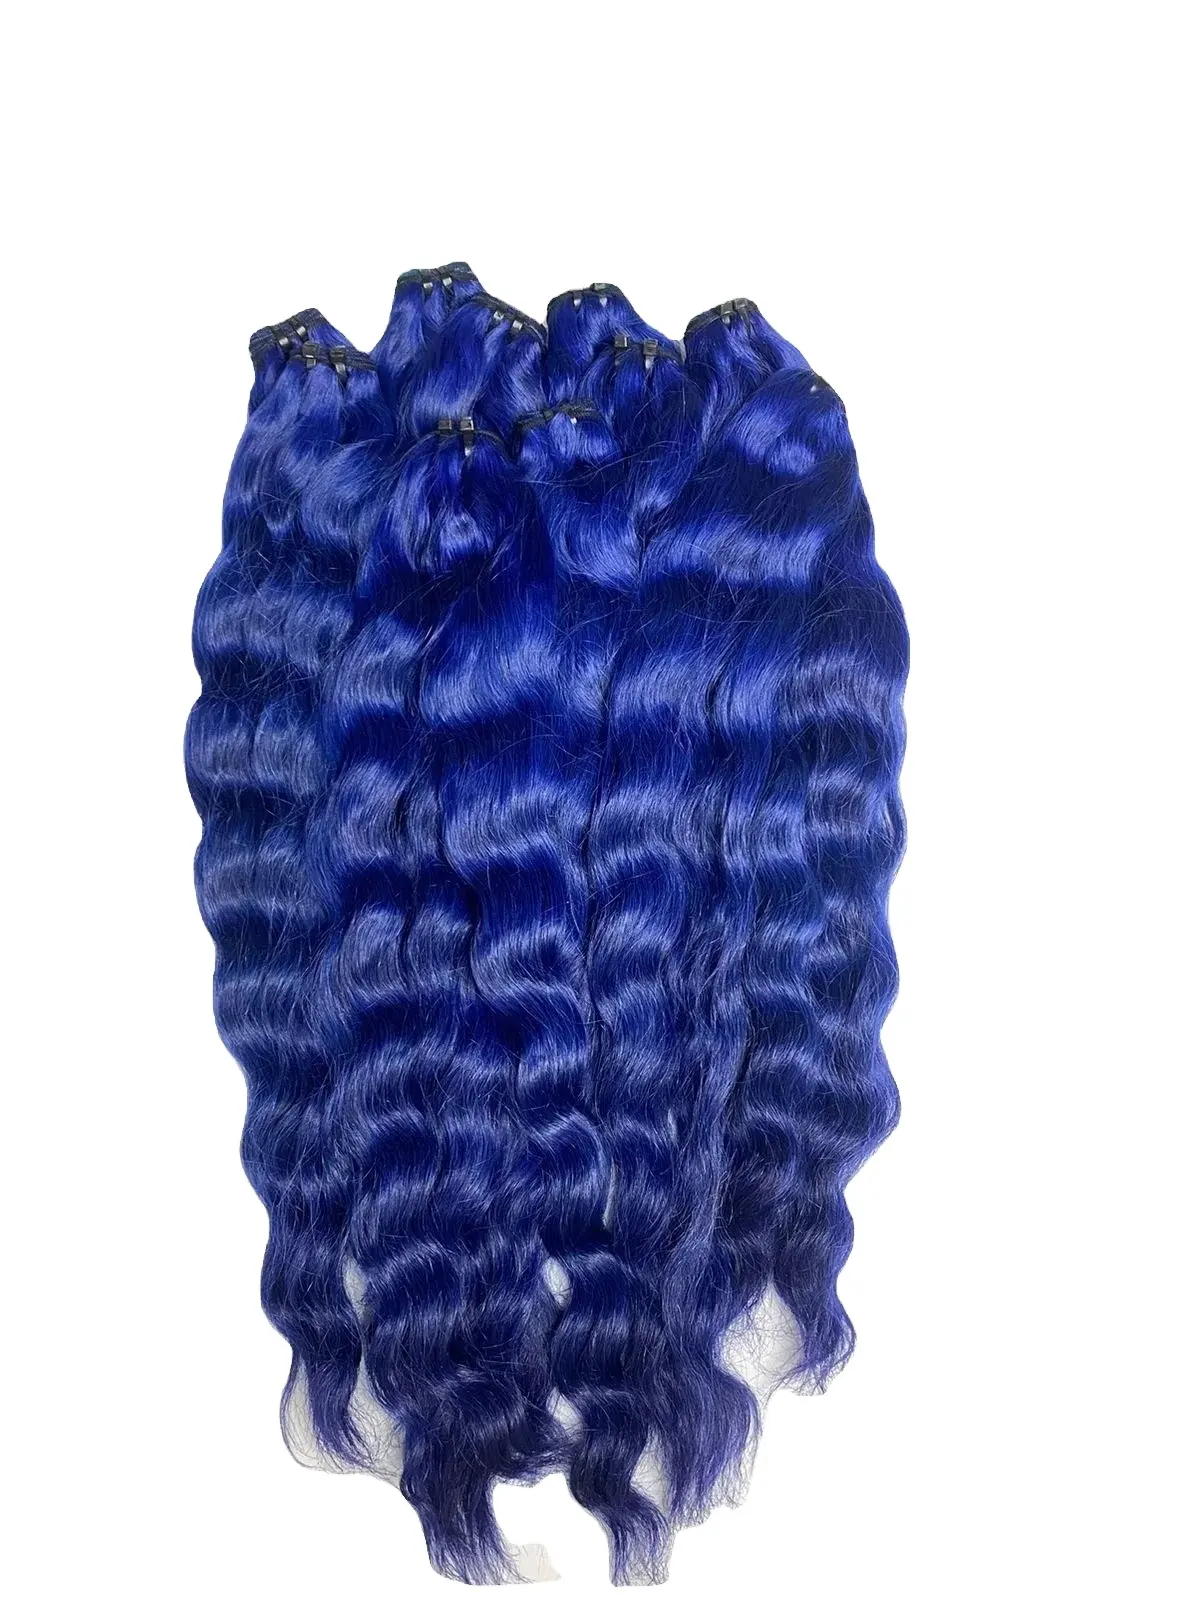 बालों के विस्तार के निर्यात में विशेष होने के शीर्ष मानव बाल नीले प्राकृतिक तरंग, कोई रासायनिक उपचार खराब गंध नहीं